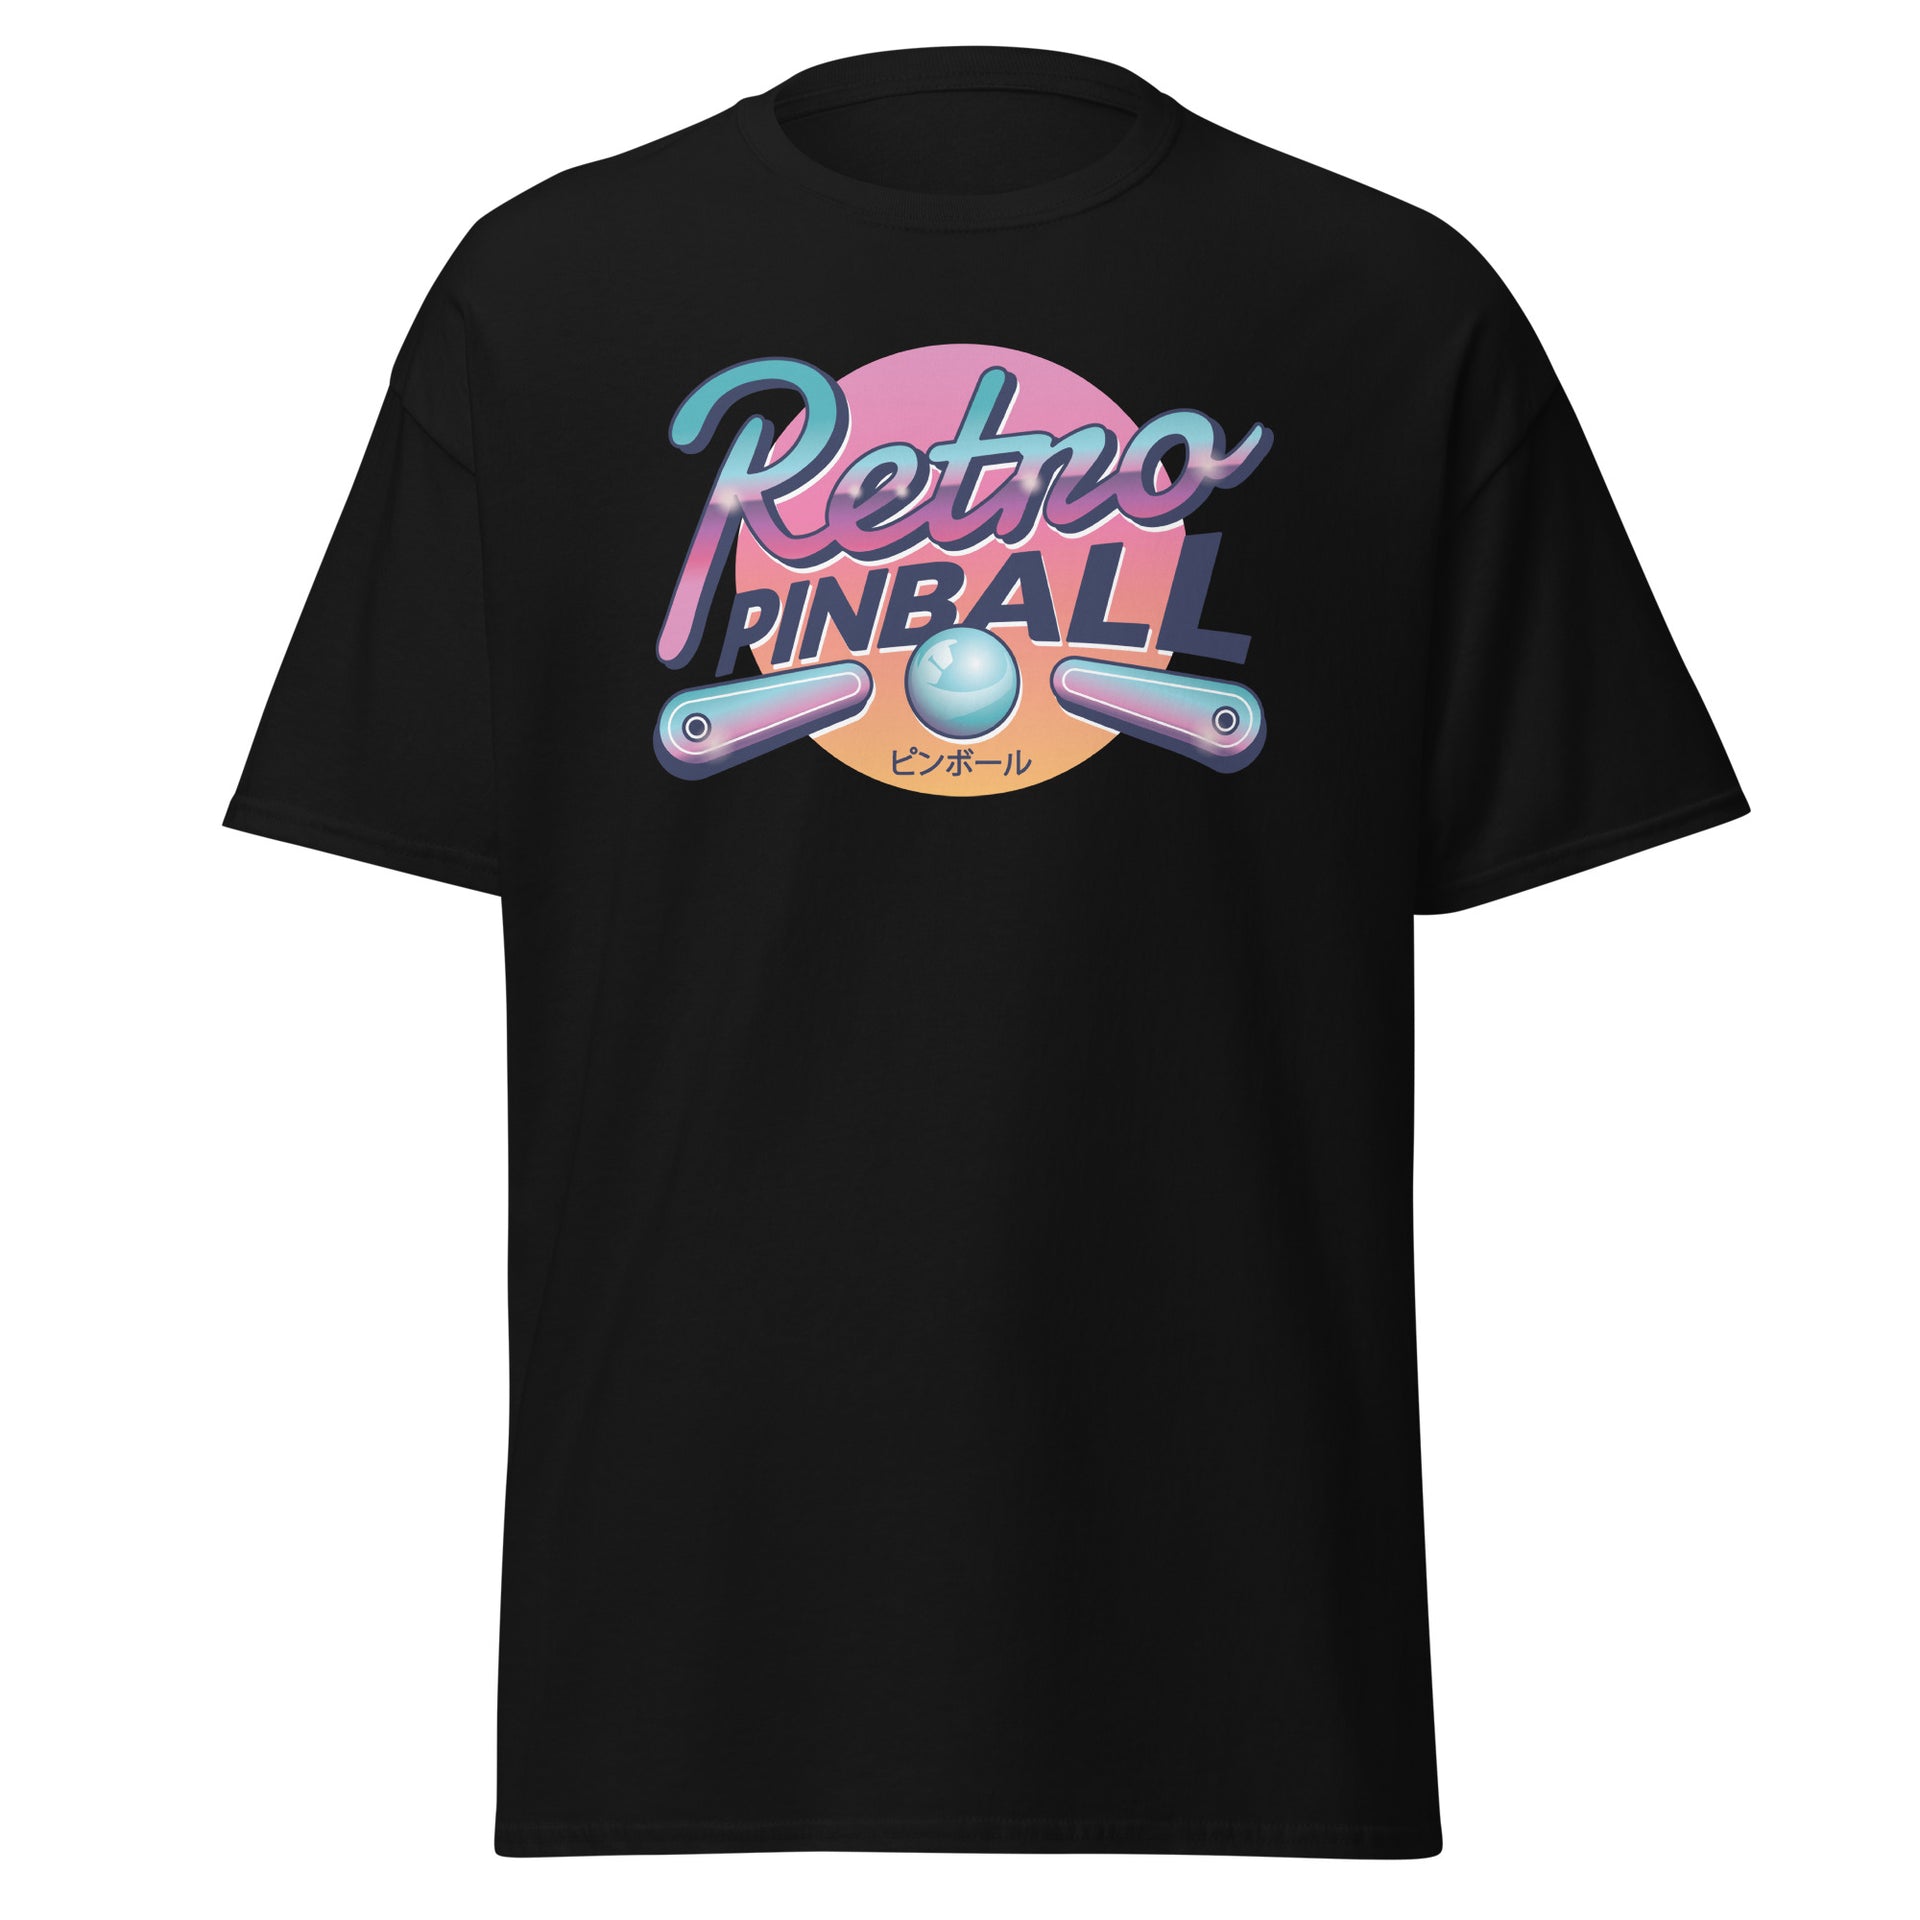 Retro Pinball Men's T-Shirt